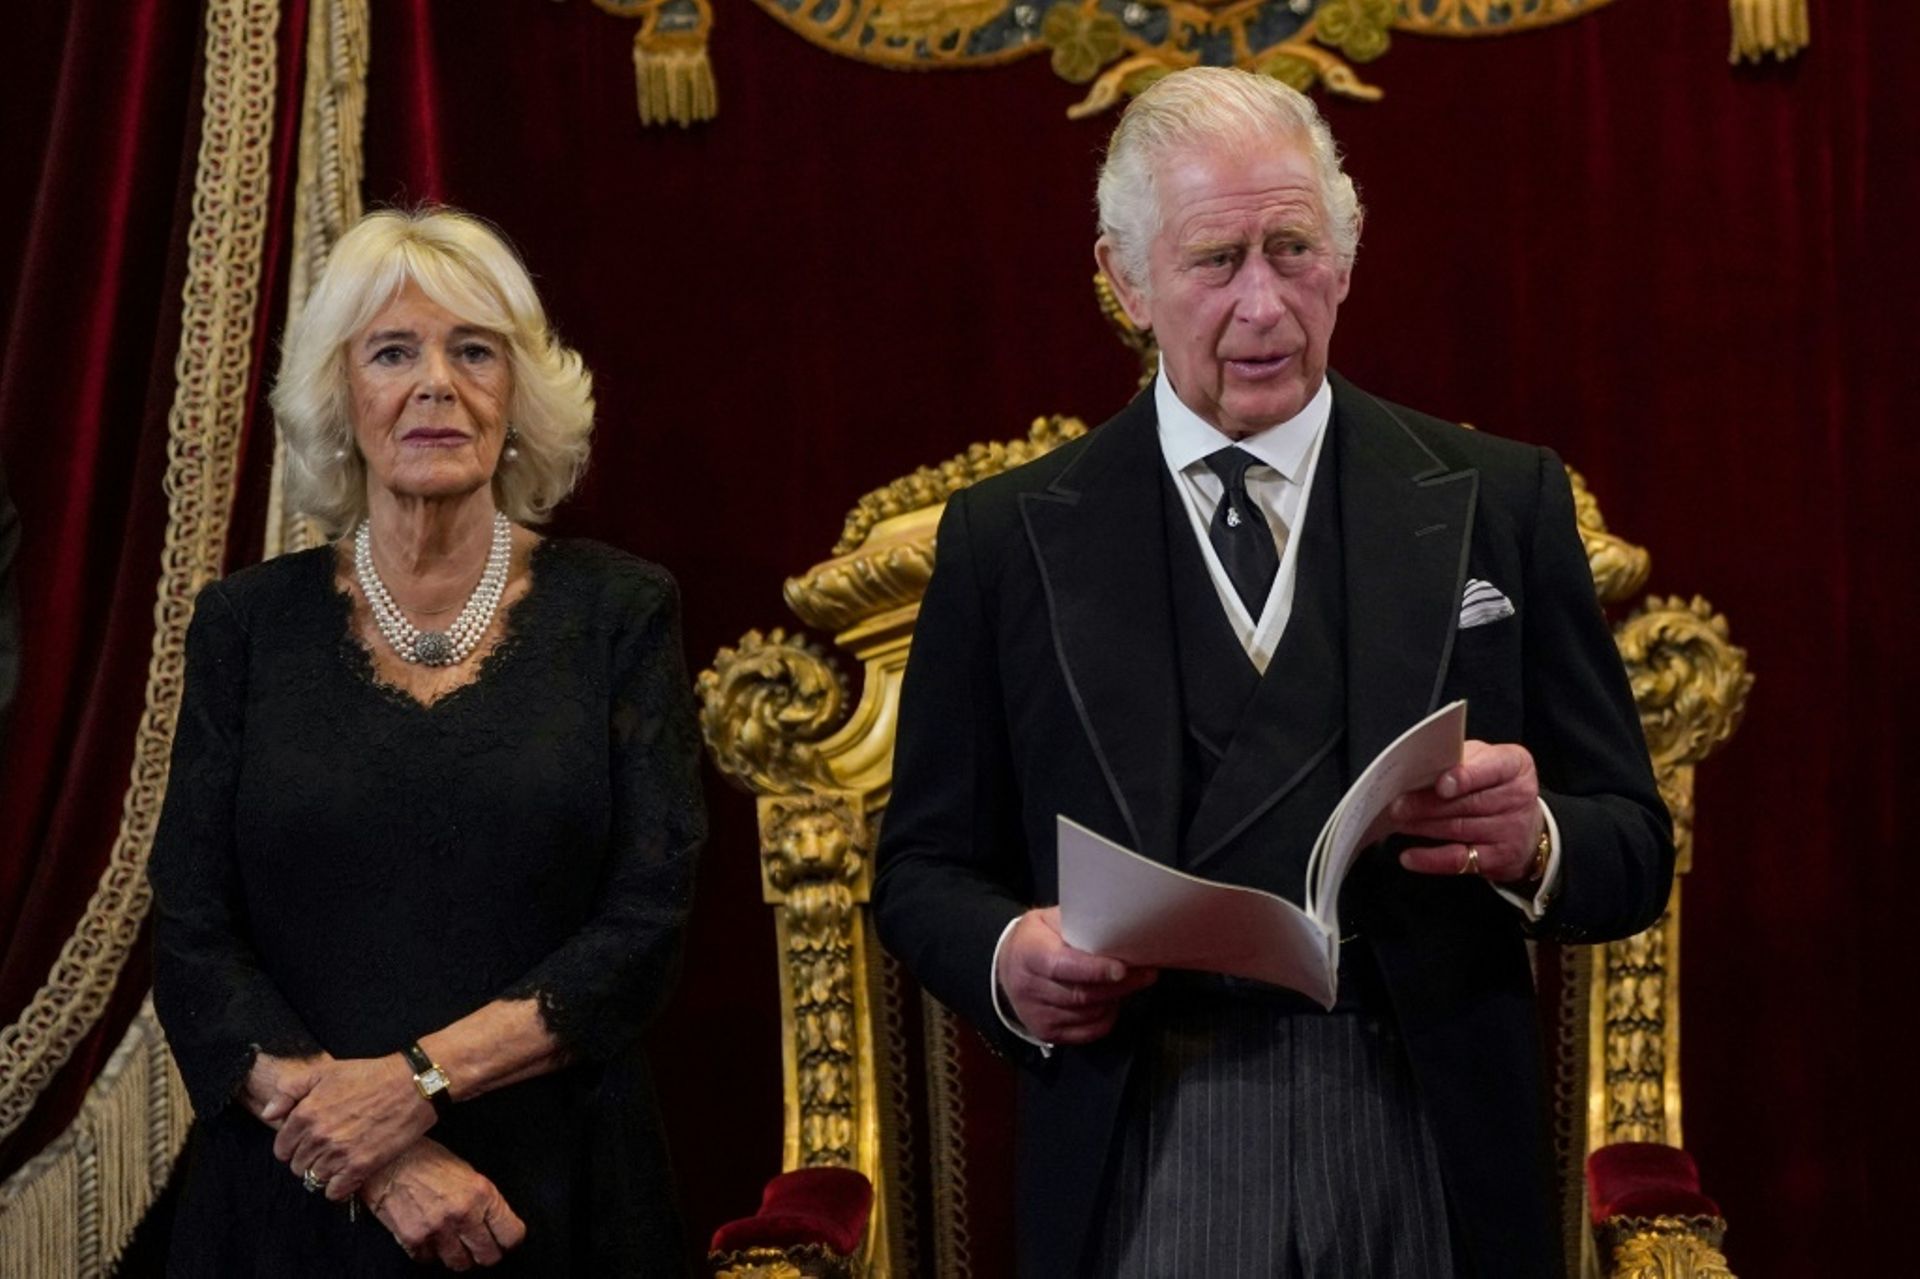 Le roi Charles III (droite) s’adresse au conseil d’accession au Palais St James de Londres (Royaume-Uni) en compagnie de son épouse, la reine consort Camilla (gauche), le 10 septembre 2022